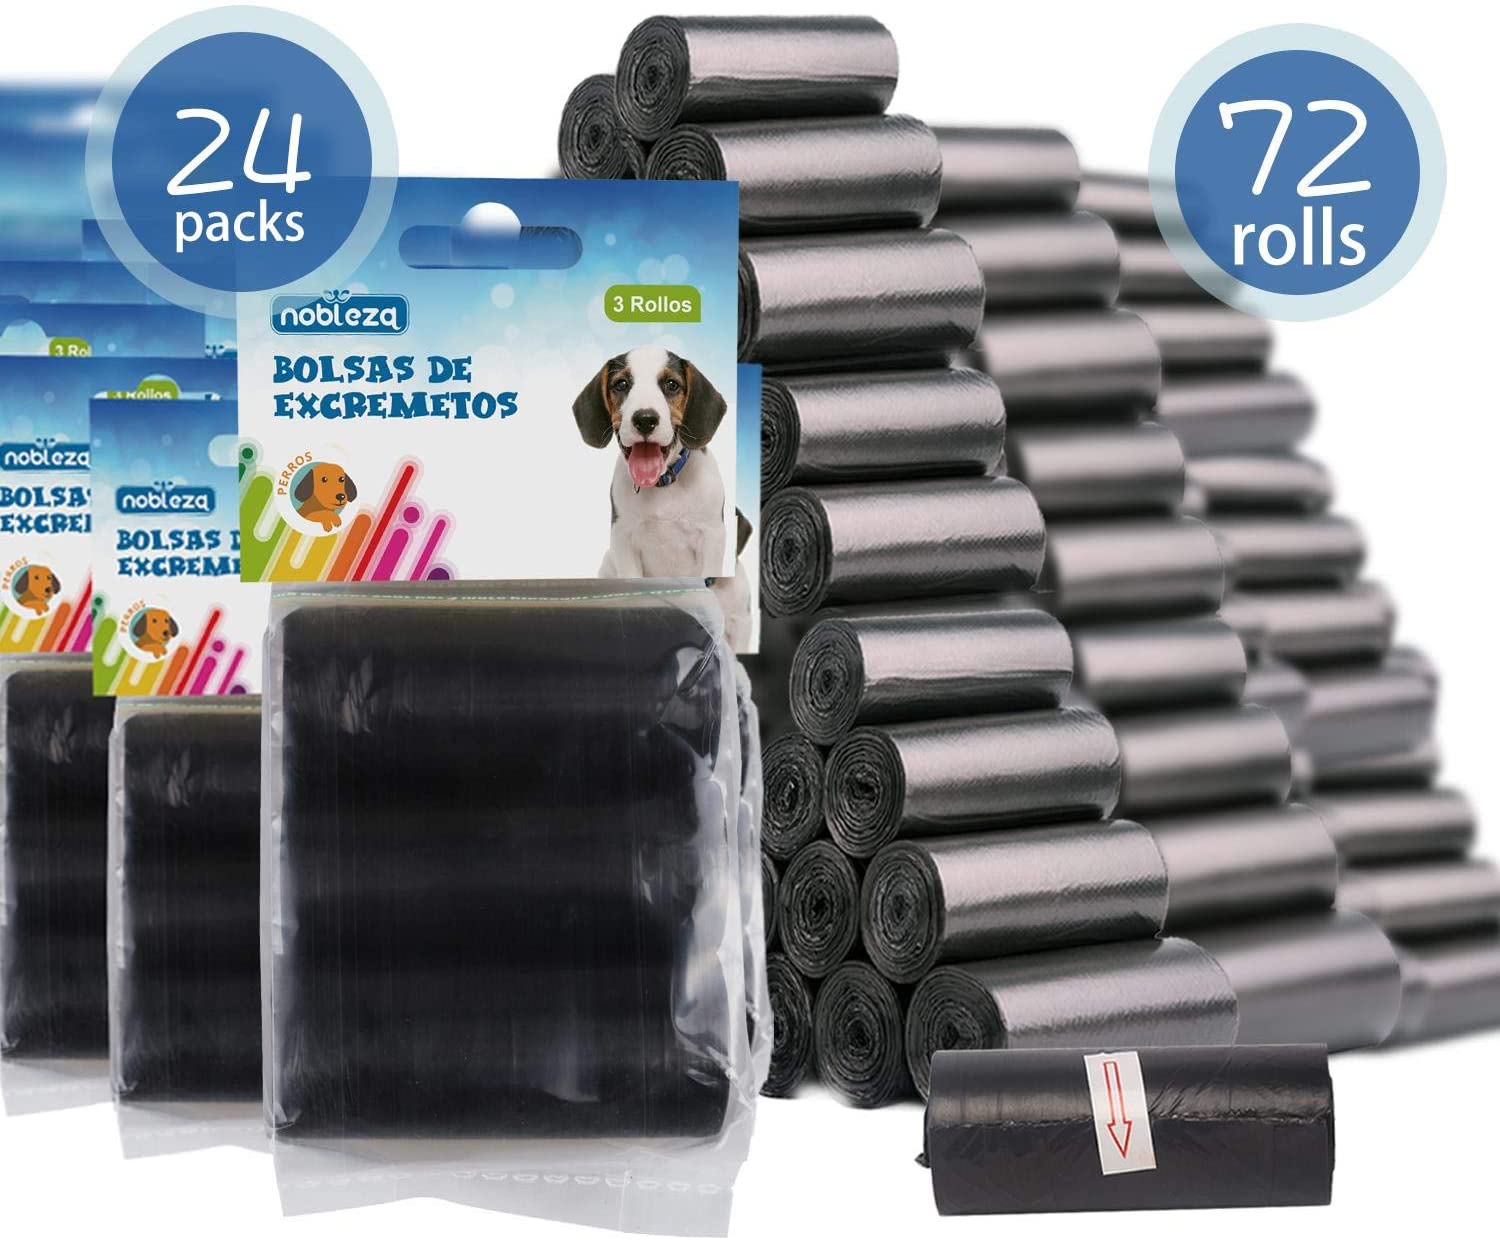  Nobleza - 1080 Conde Bolsas de Caca Perro Bolsas para excrementos de Perros Pack de 72 Rollos. Color Negro 